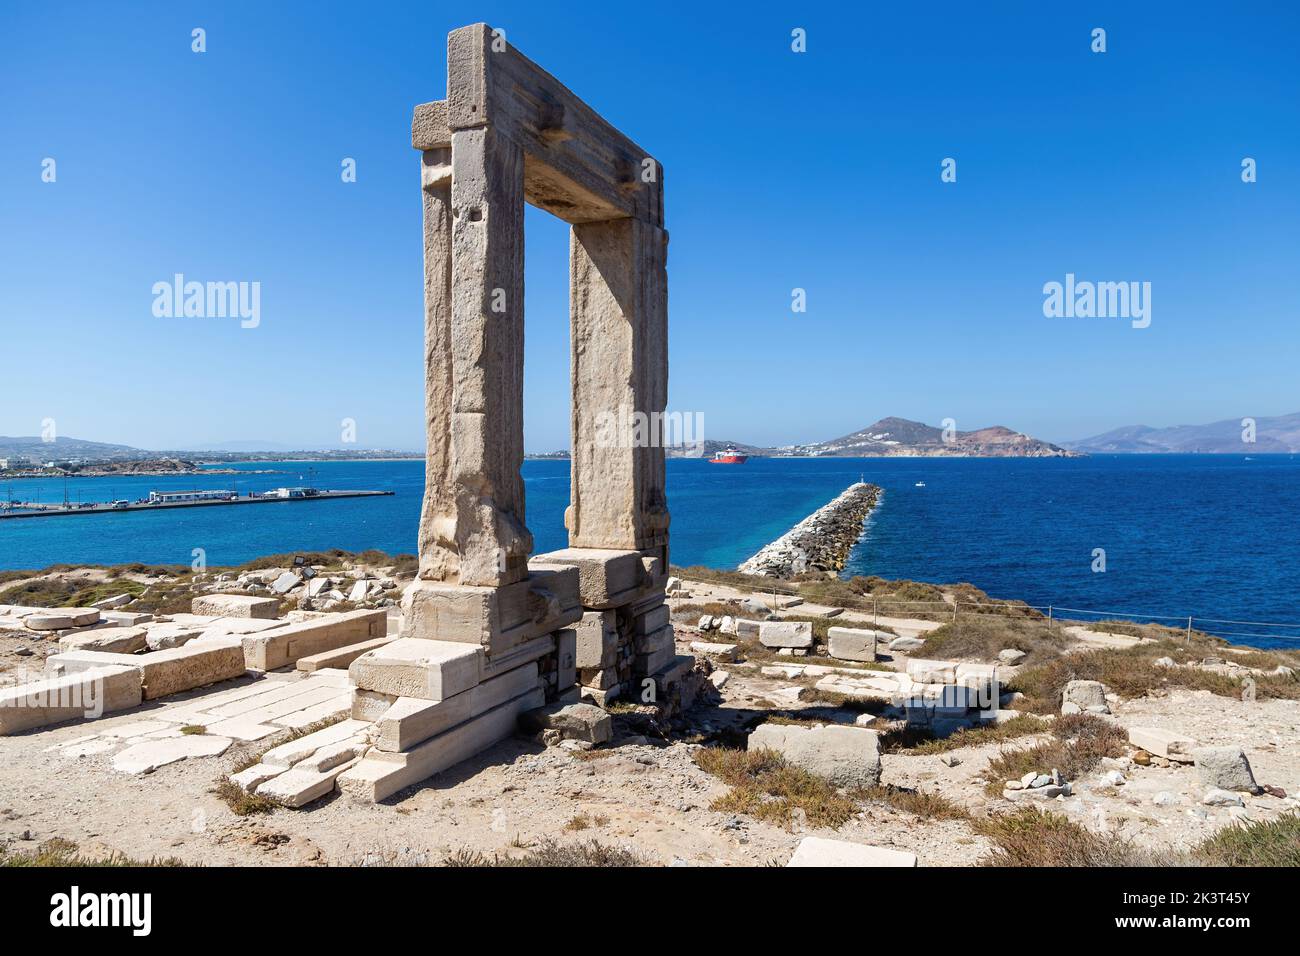 Île de Naxos, Temple d'Apollon, Cyclades Grèce. Portara, portail en marbre sur l'îlot de Palatia, journée ensoleillée, mer calme, port, ciel bleu Banque D'Images